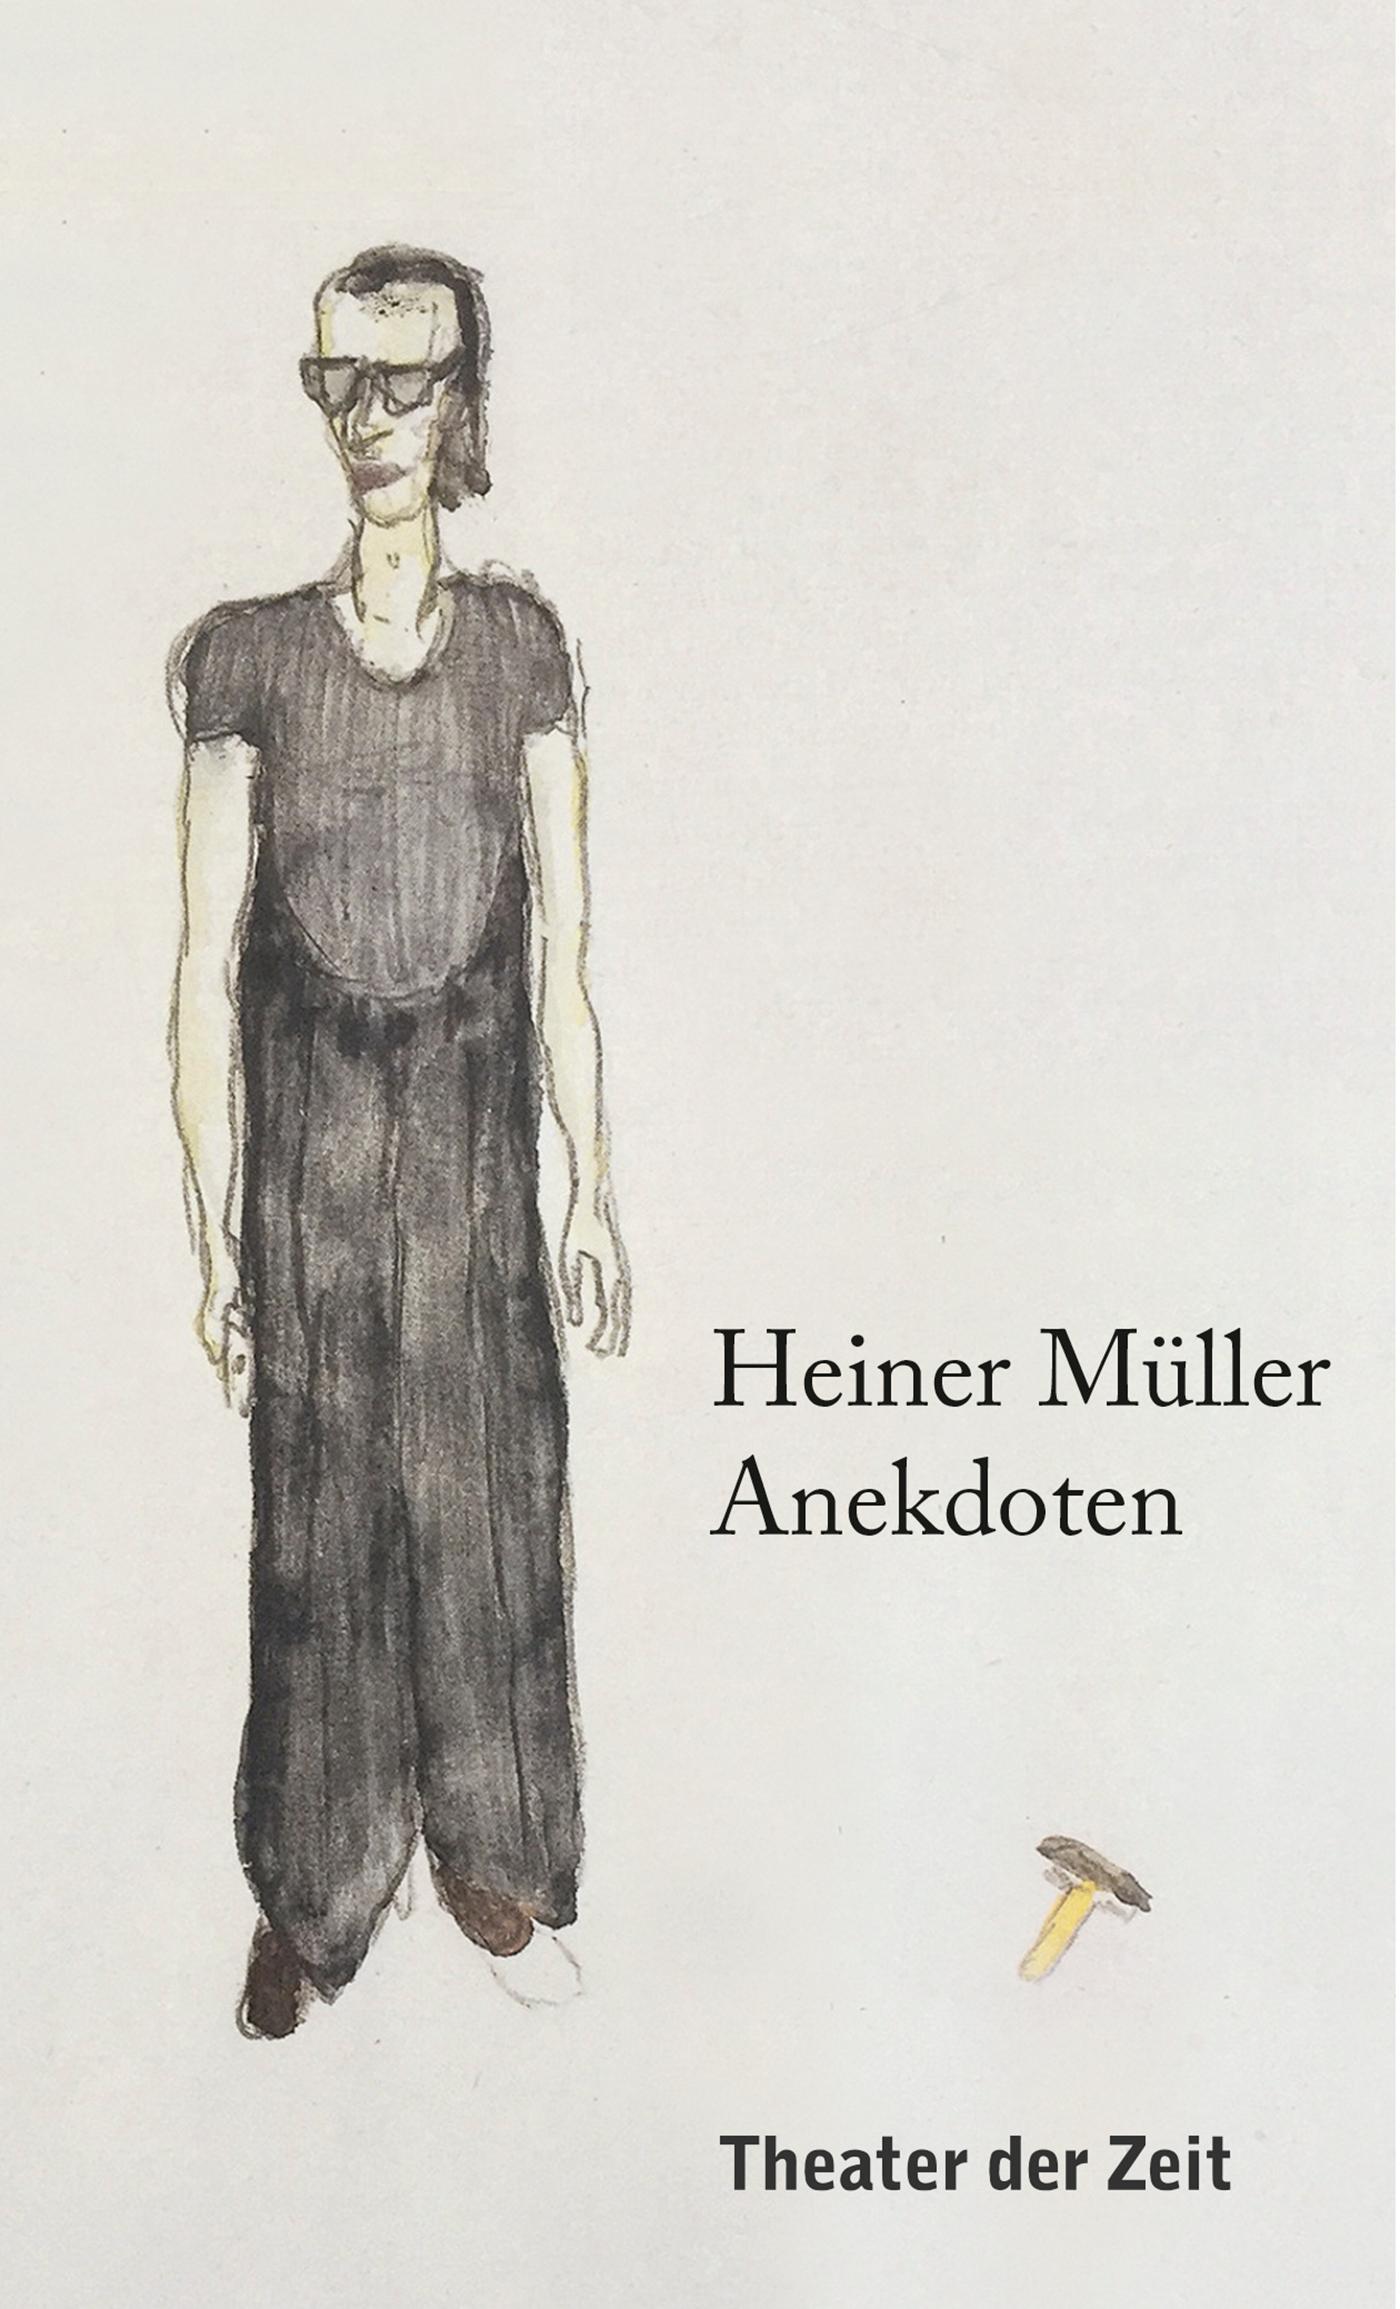 "Heiner Müller – Anekdoten"